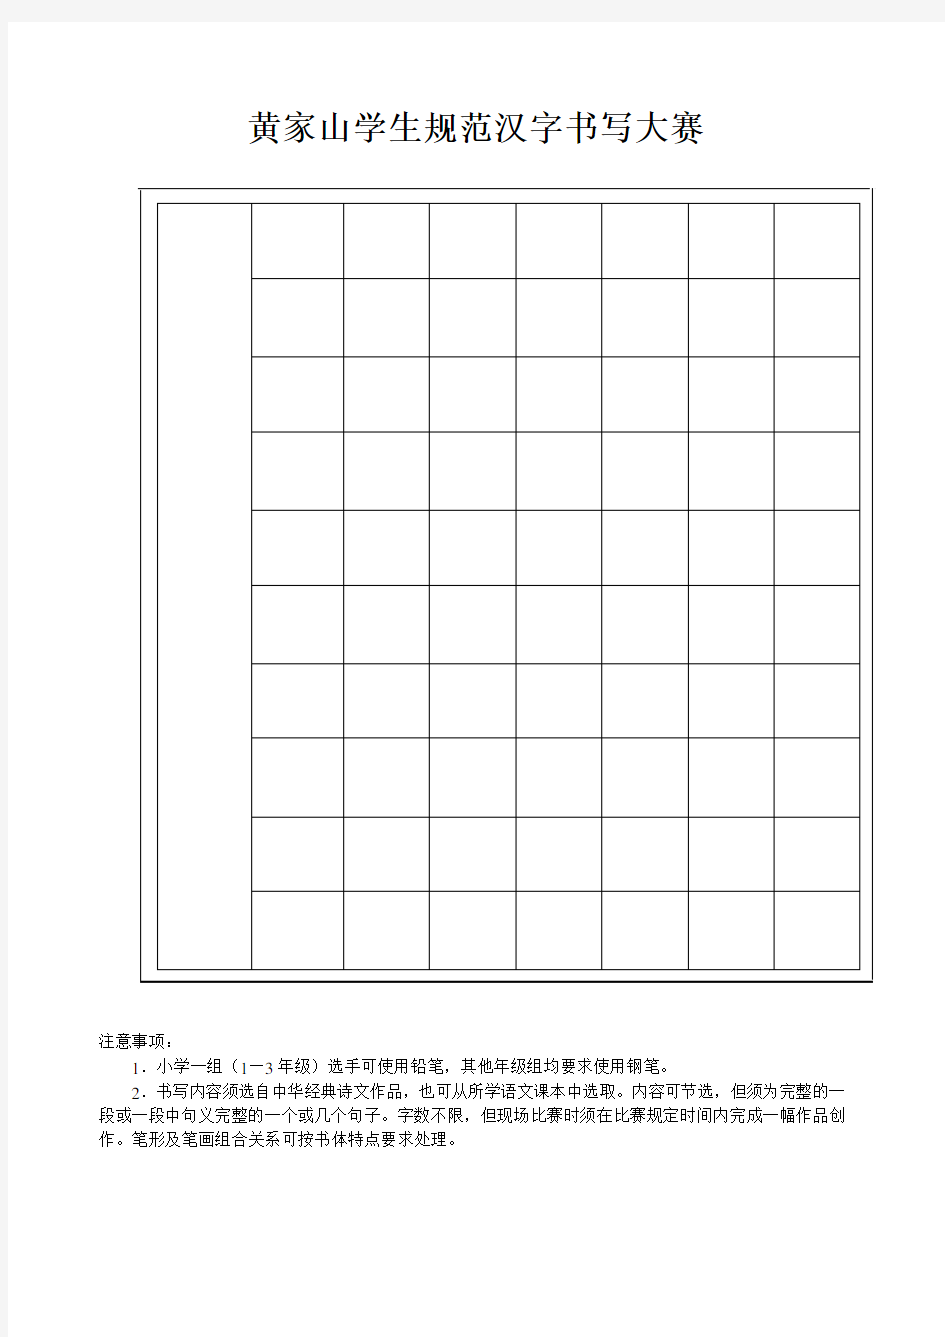 学生规范汉字书写大赛(硬笔格式)